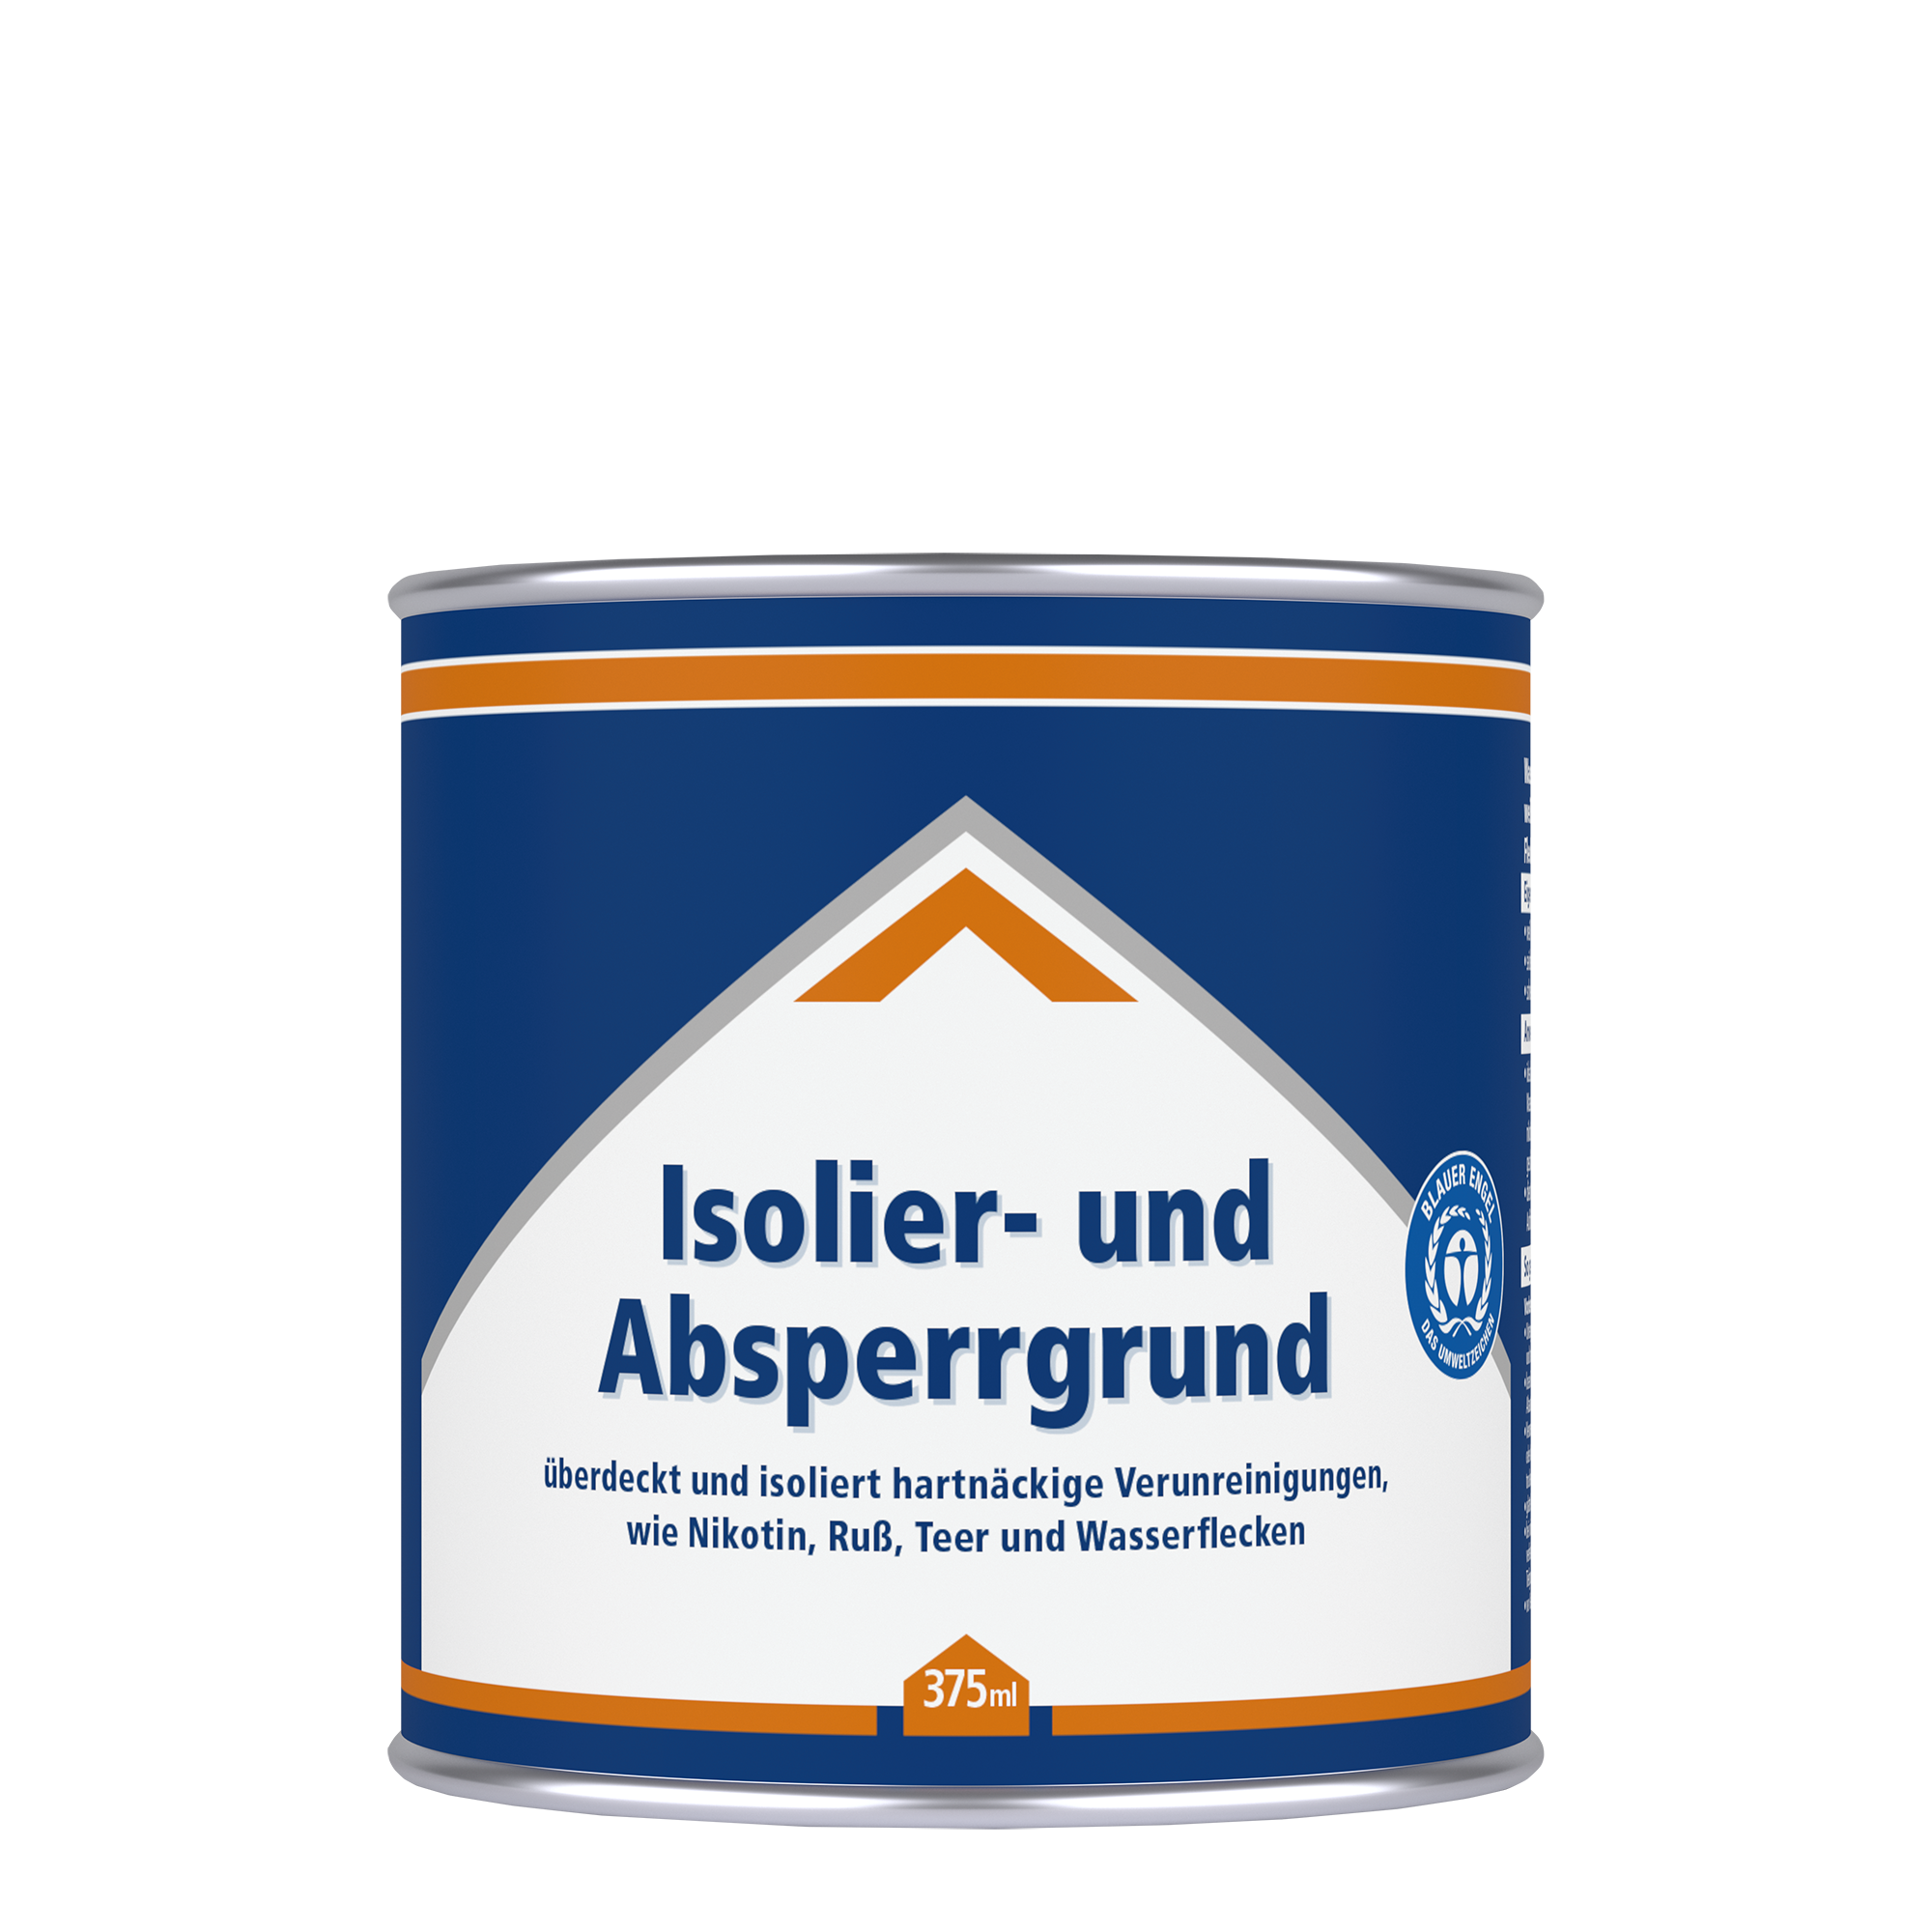 Isolier- und Absperrgrund weiß 0,375 l + product picture